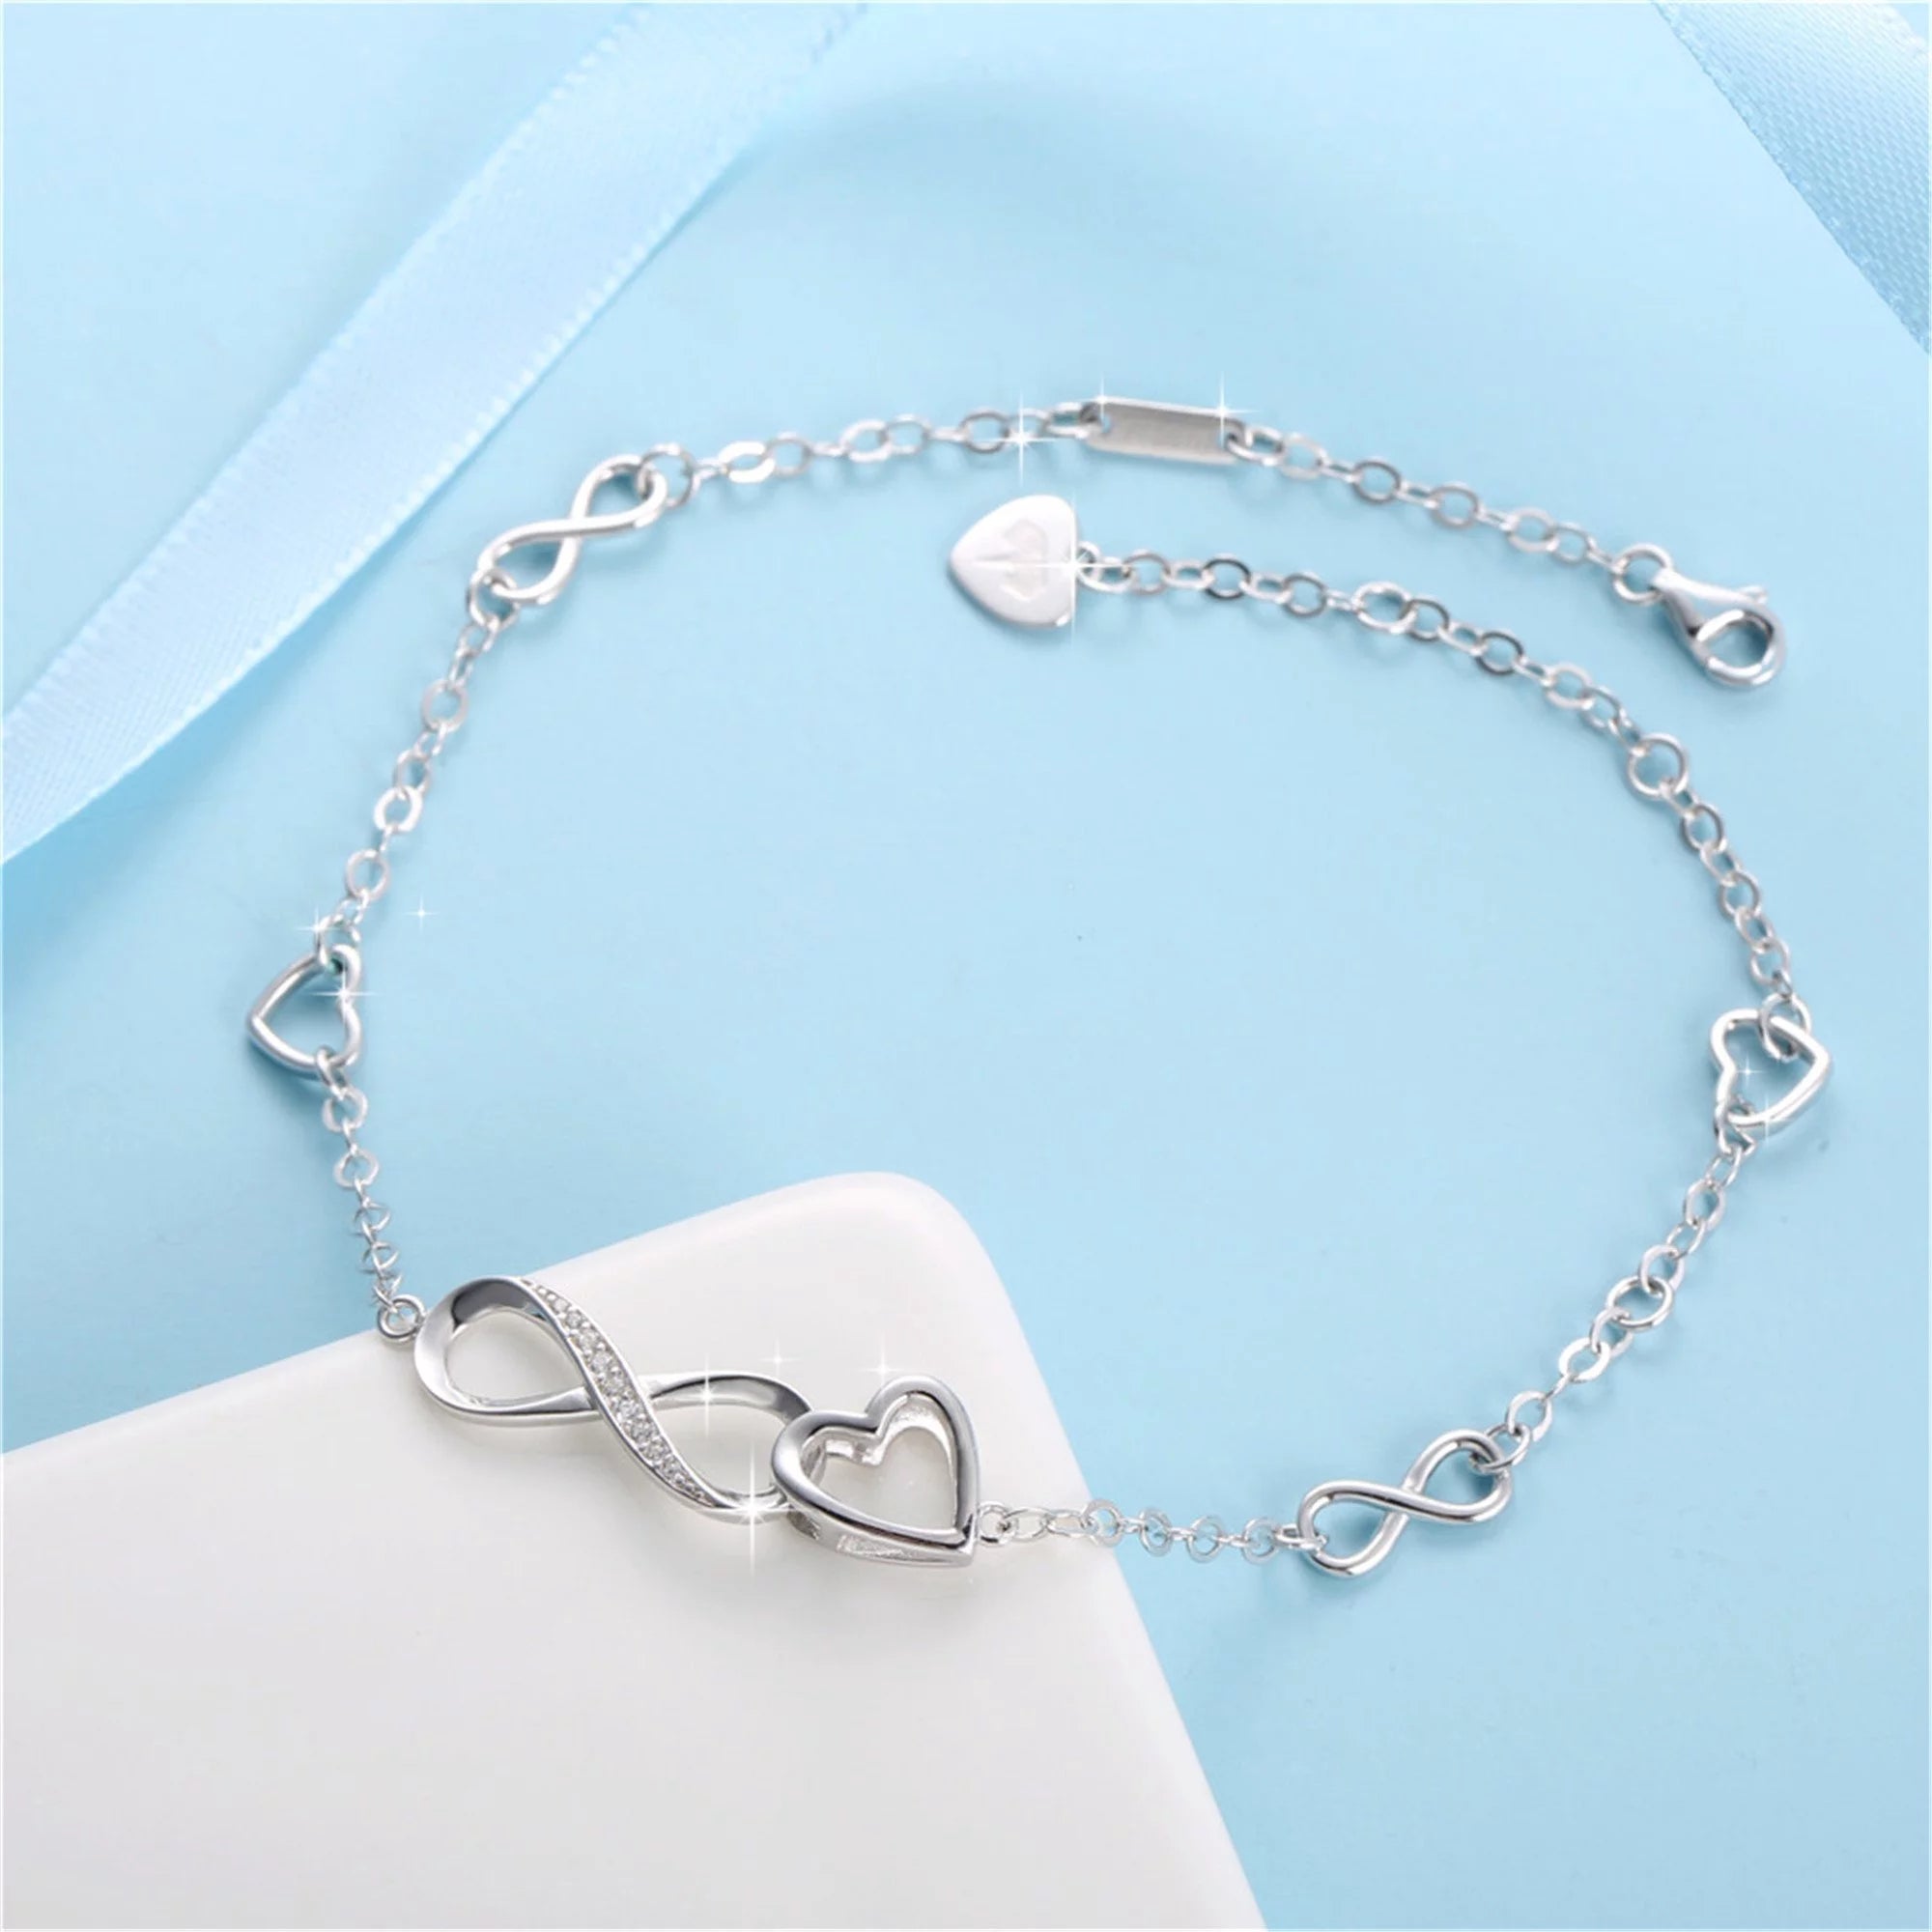 Devuggo Infinity Endless Love Heart Adjustable Bracelet, Sterling Silver Jewelry Gifts for Women